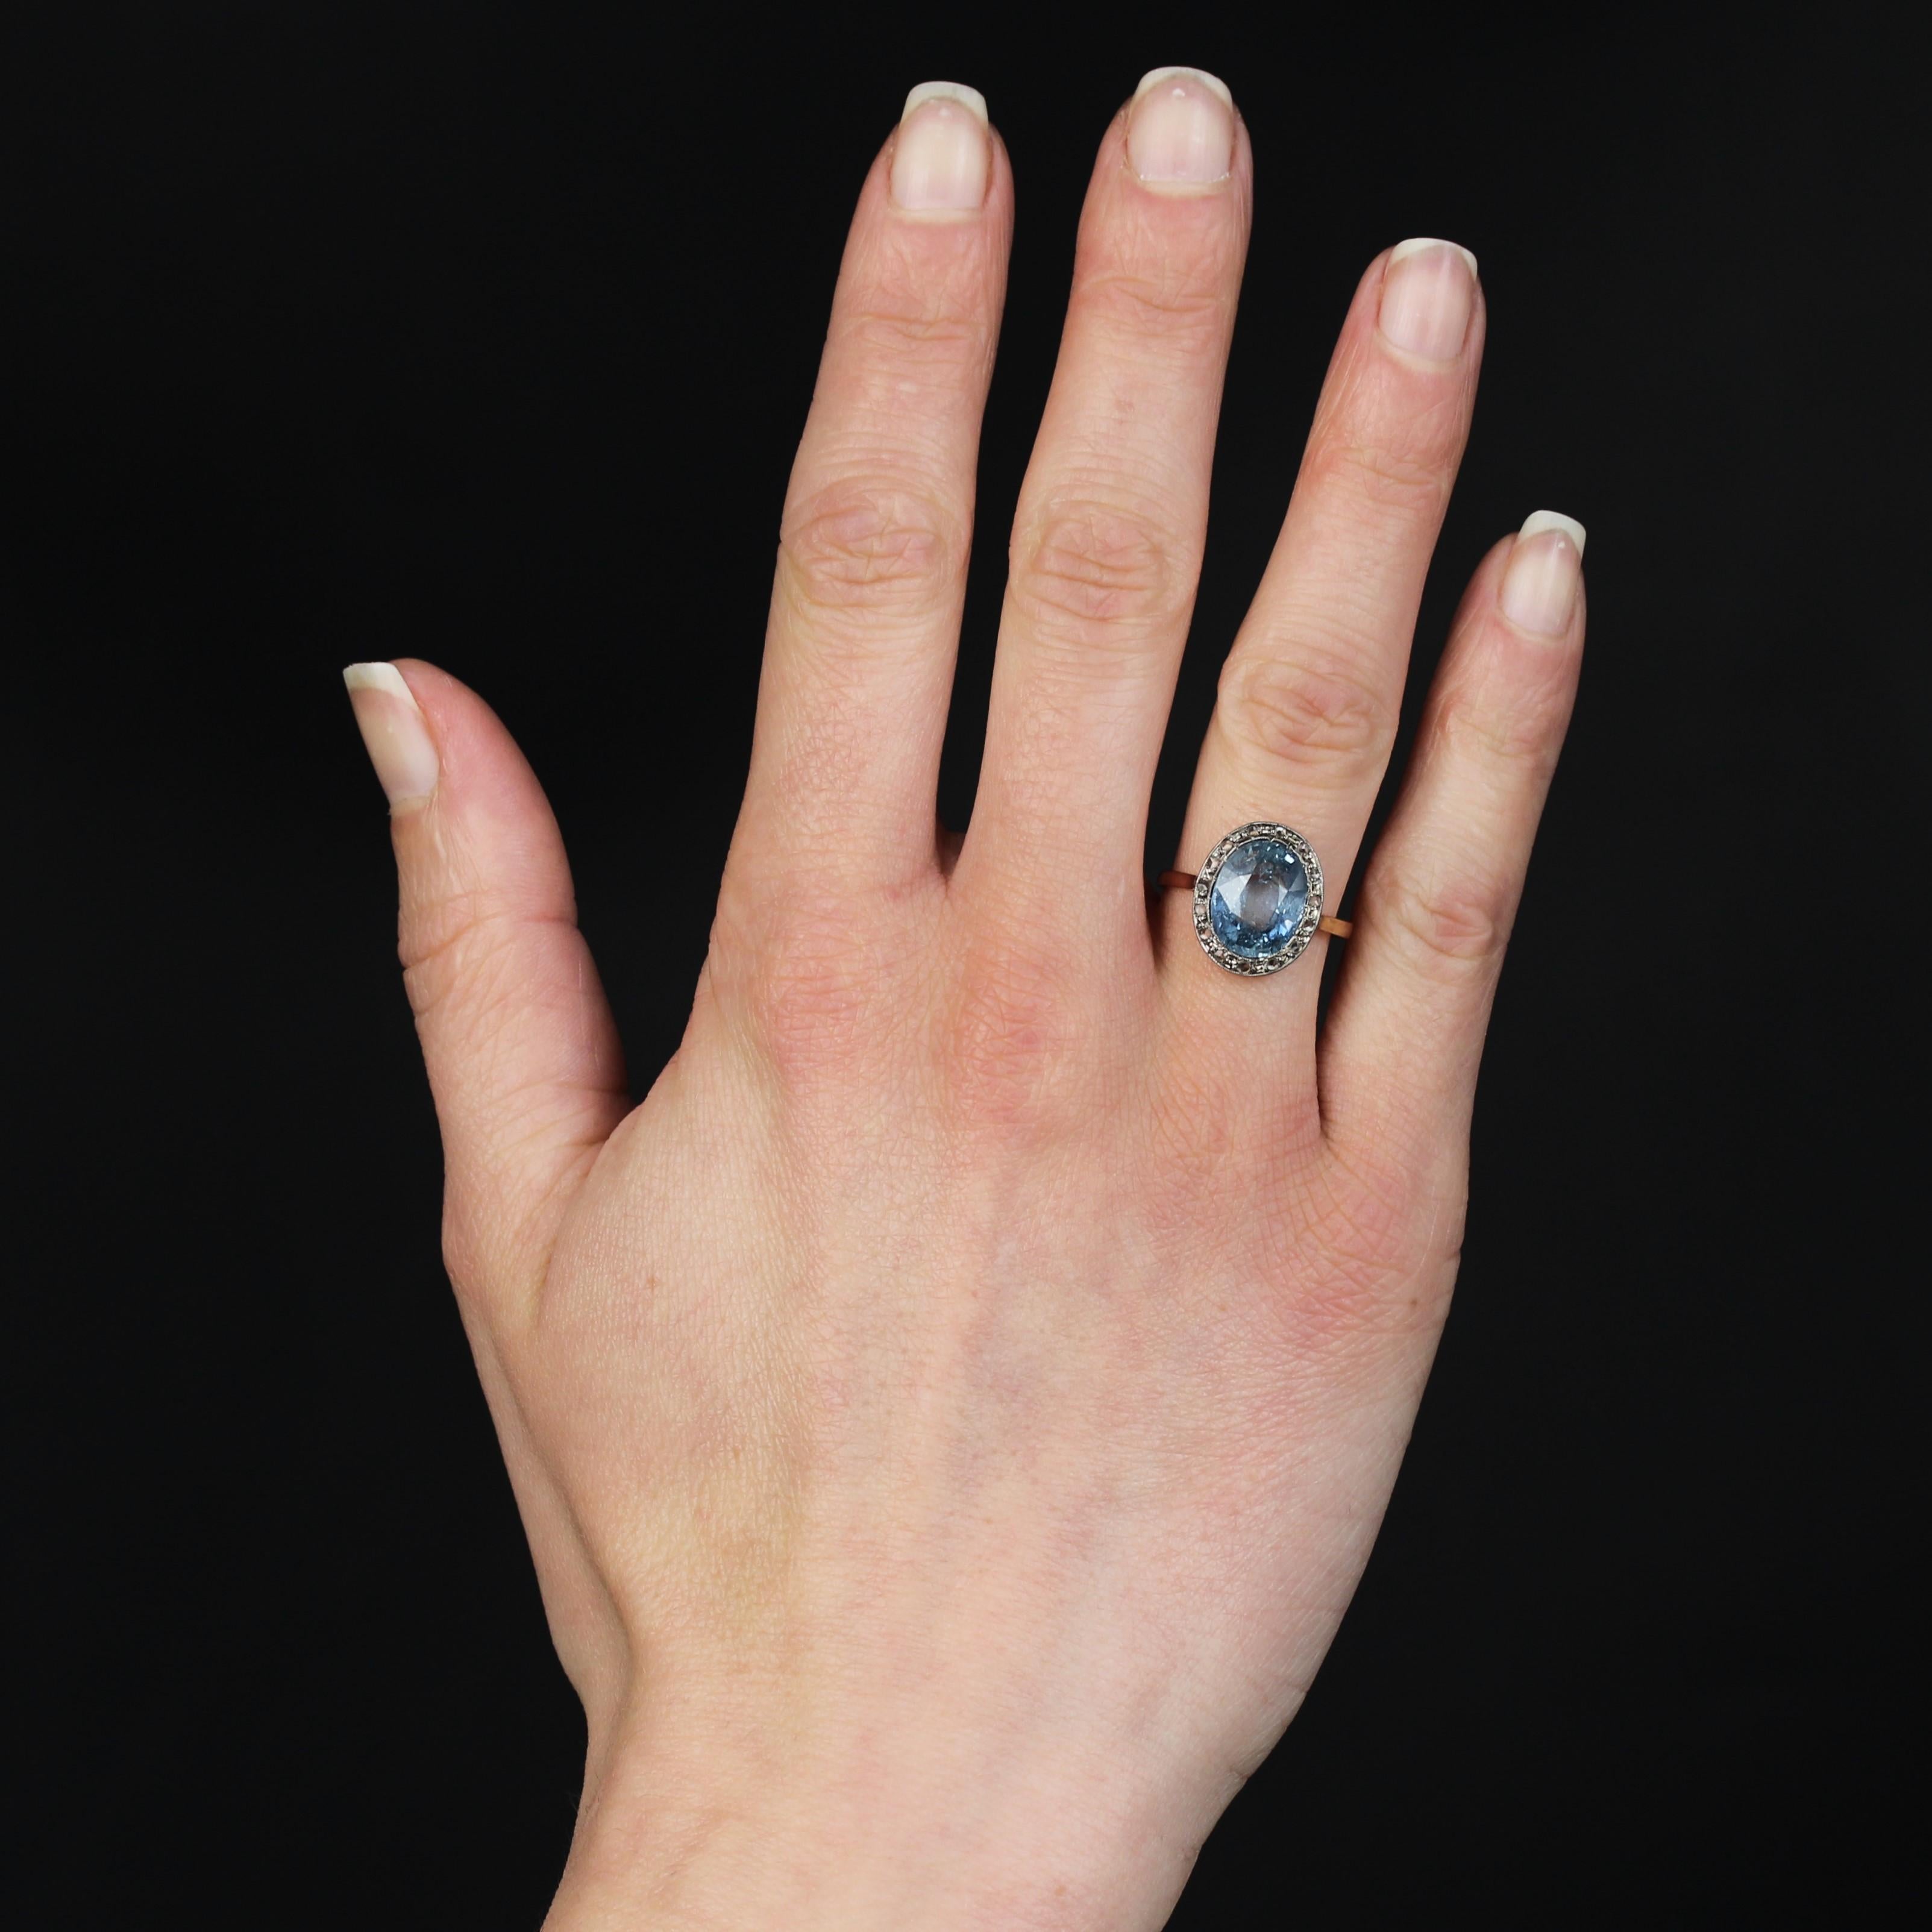 Ring aus 18 Karat Roségold.
Ein charmanter antiker Ring mit einer sehr flachen, ovalen Fassung, in deren Zentrum ein natürlicher hellblauer Saphir steht, der von platingefassten Diamanten im Rosenschliff umgeben ist. Die Unterseite ist mit